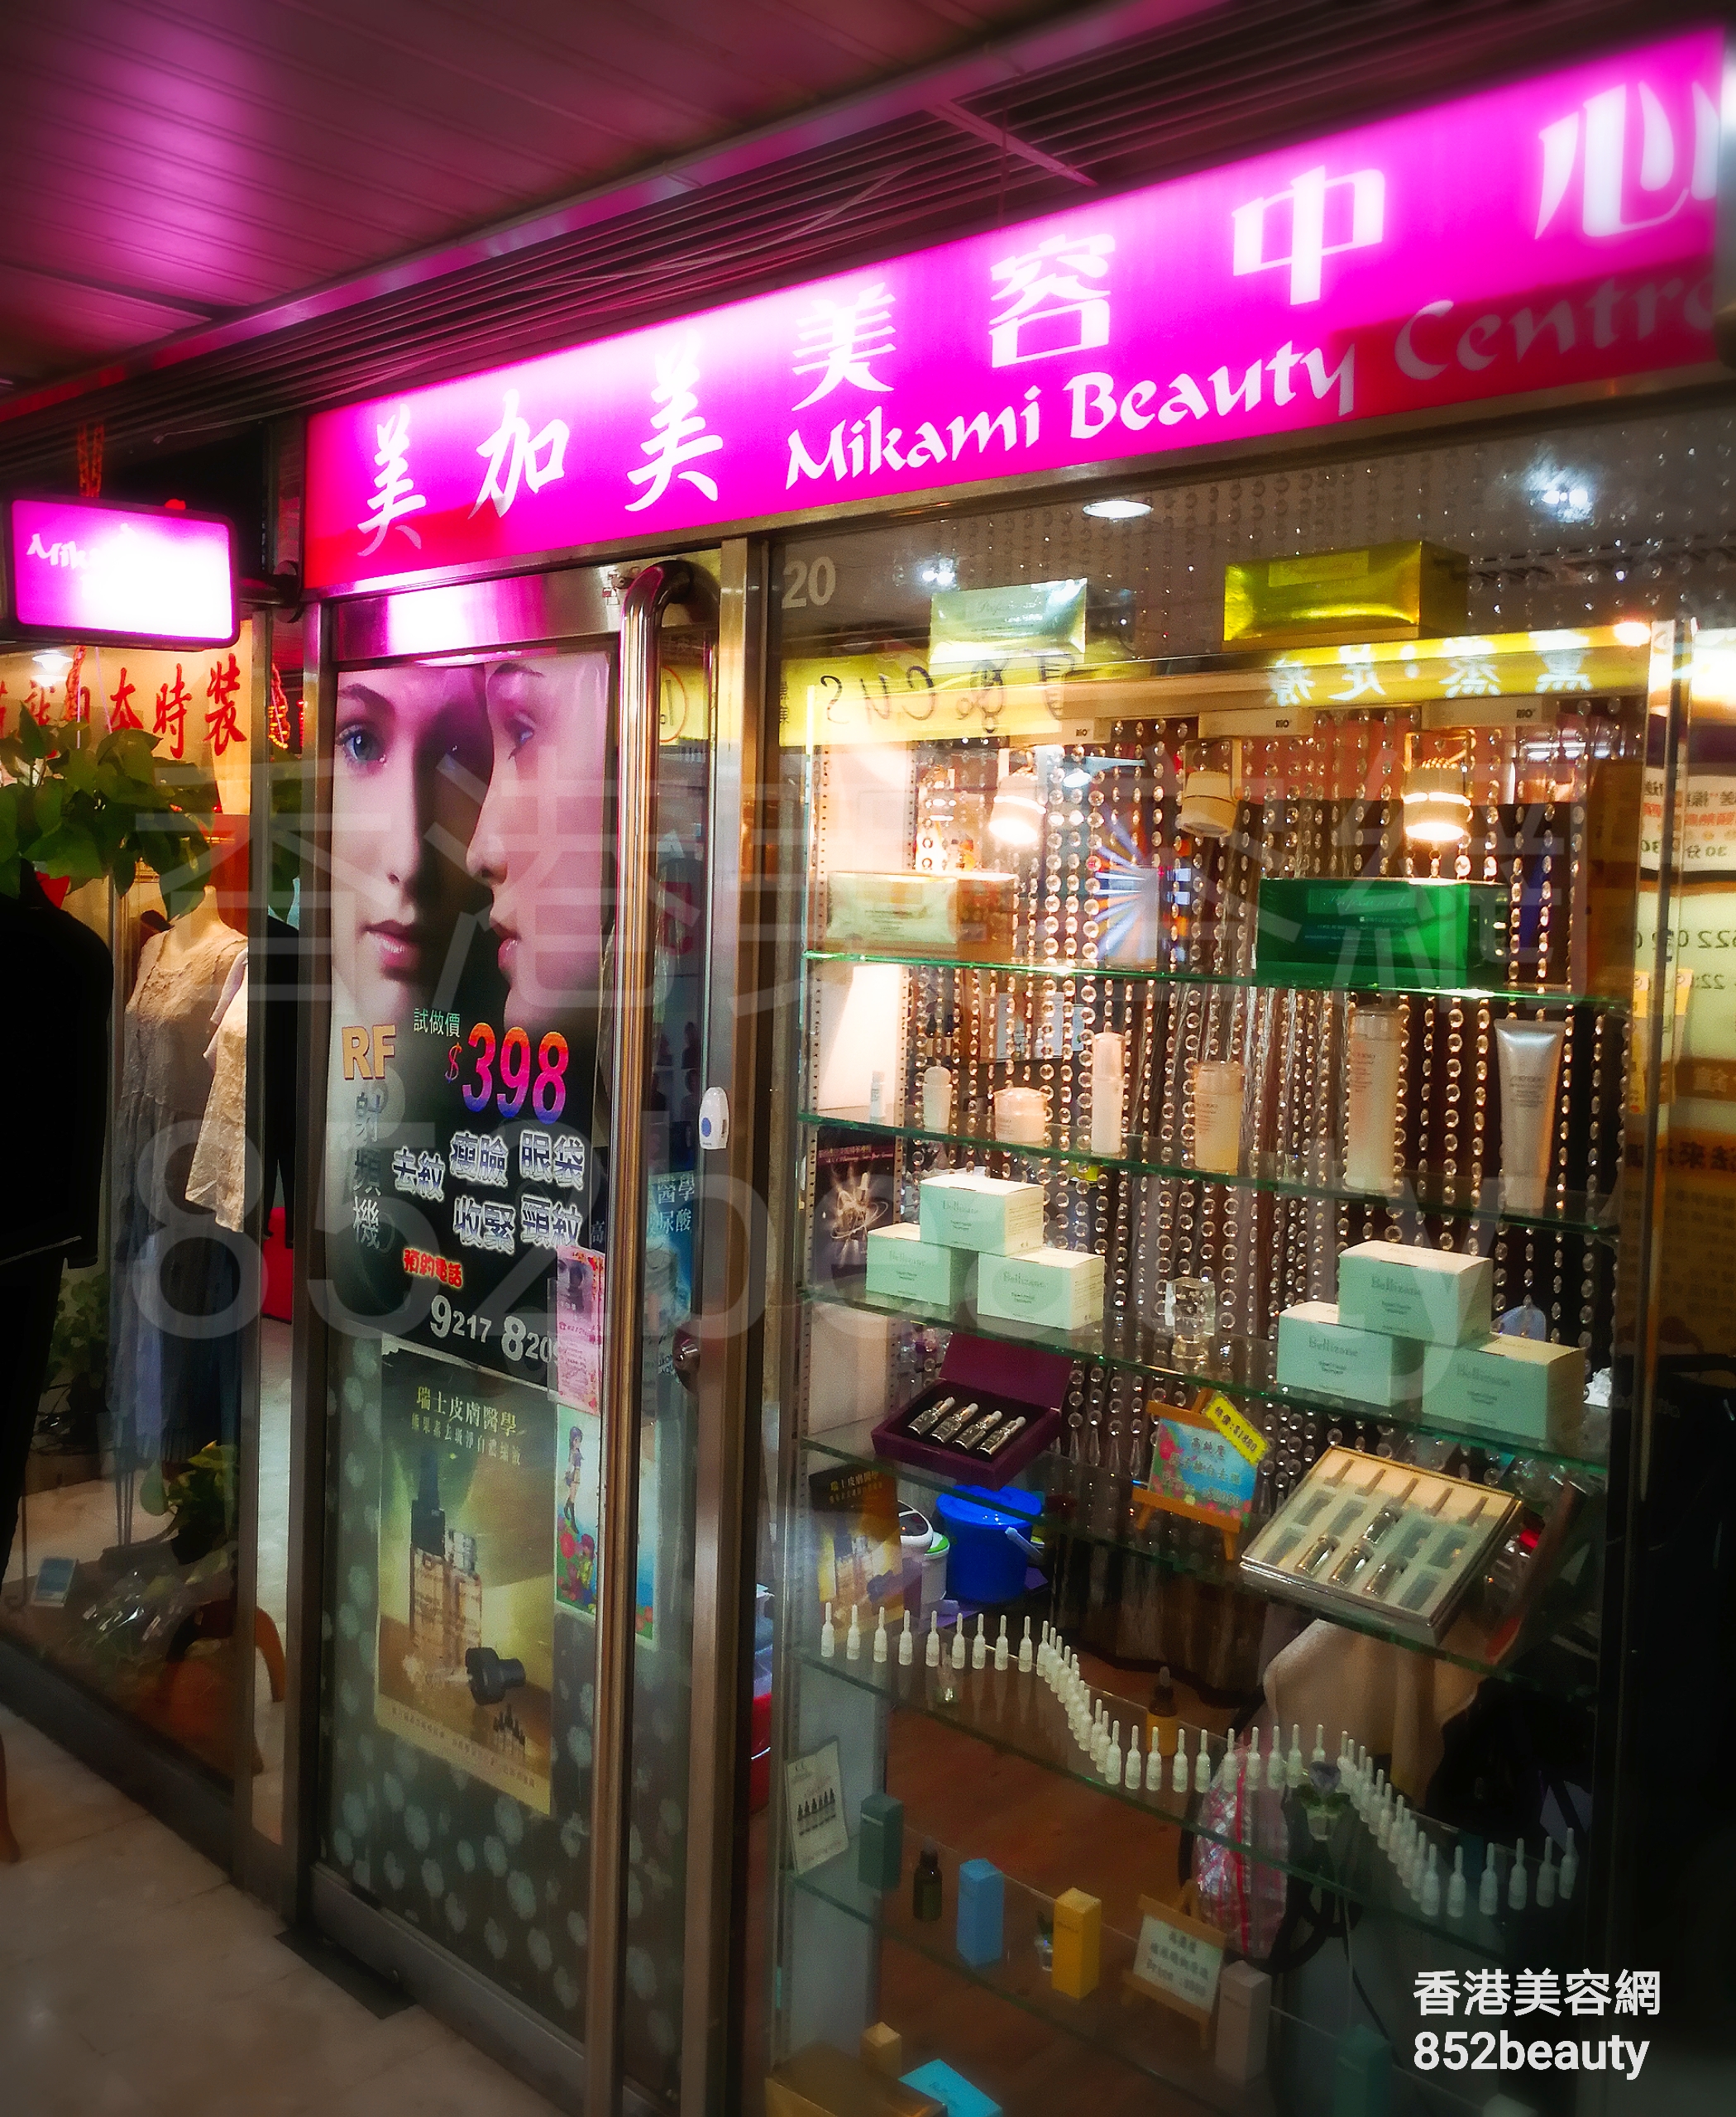 香港美容網 Hong Kong Beauty Salon 美容院 / 美容師: 美加美 美容中心